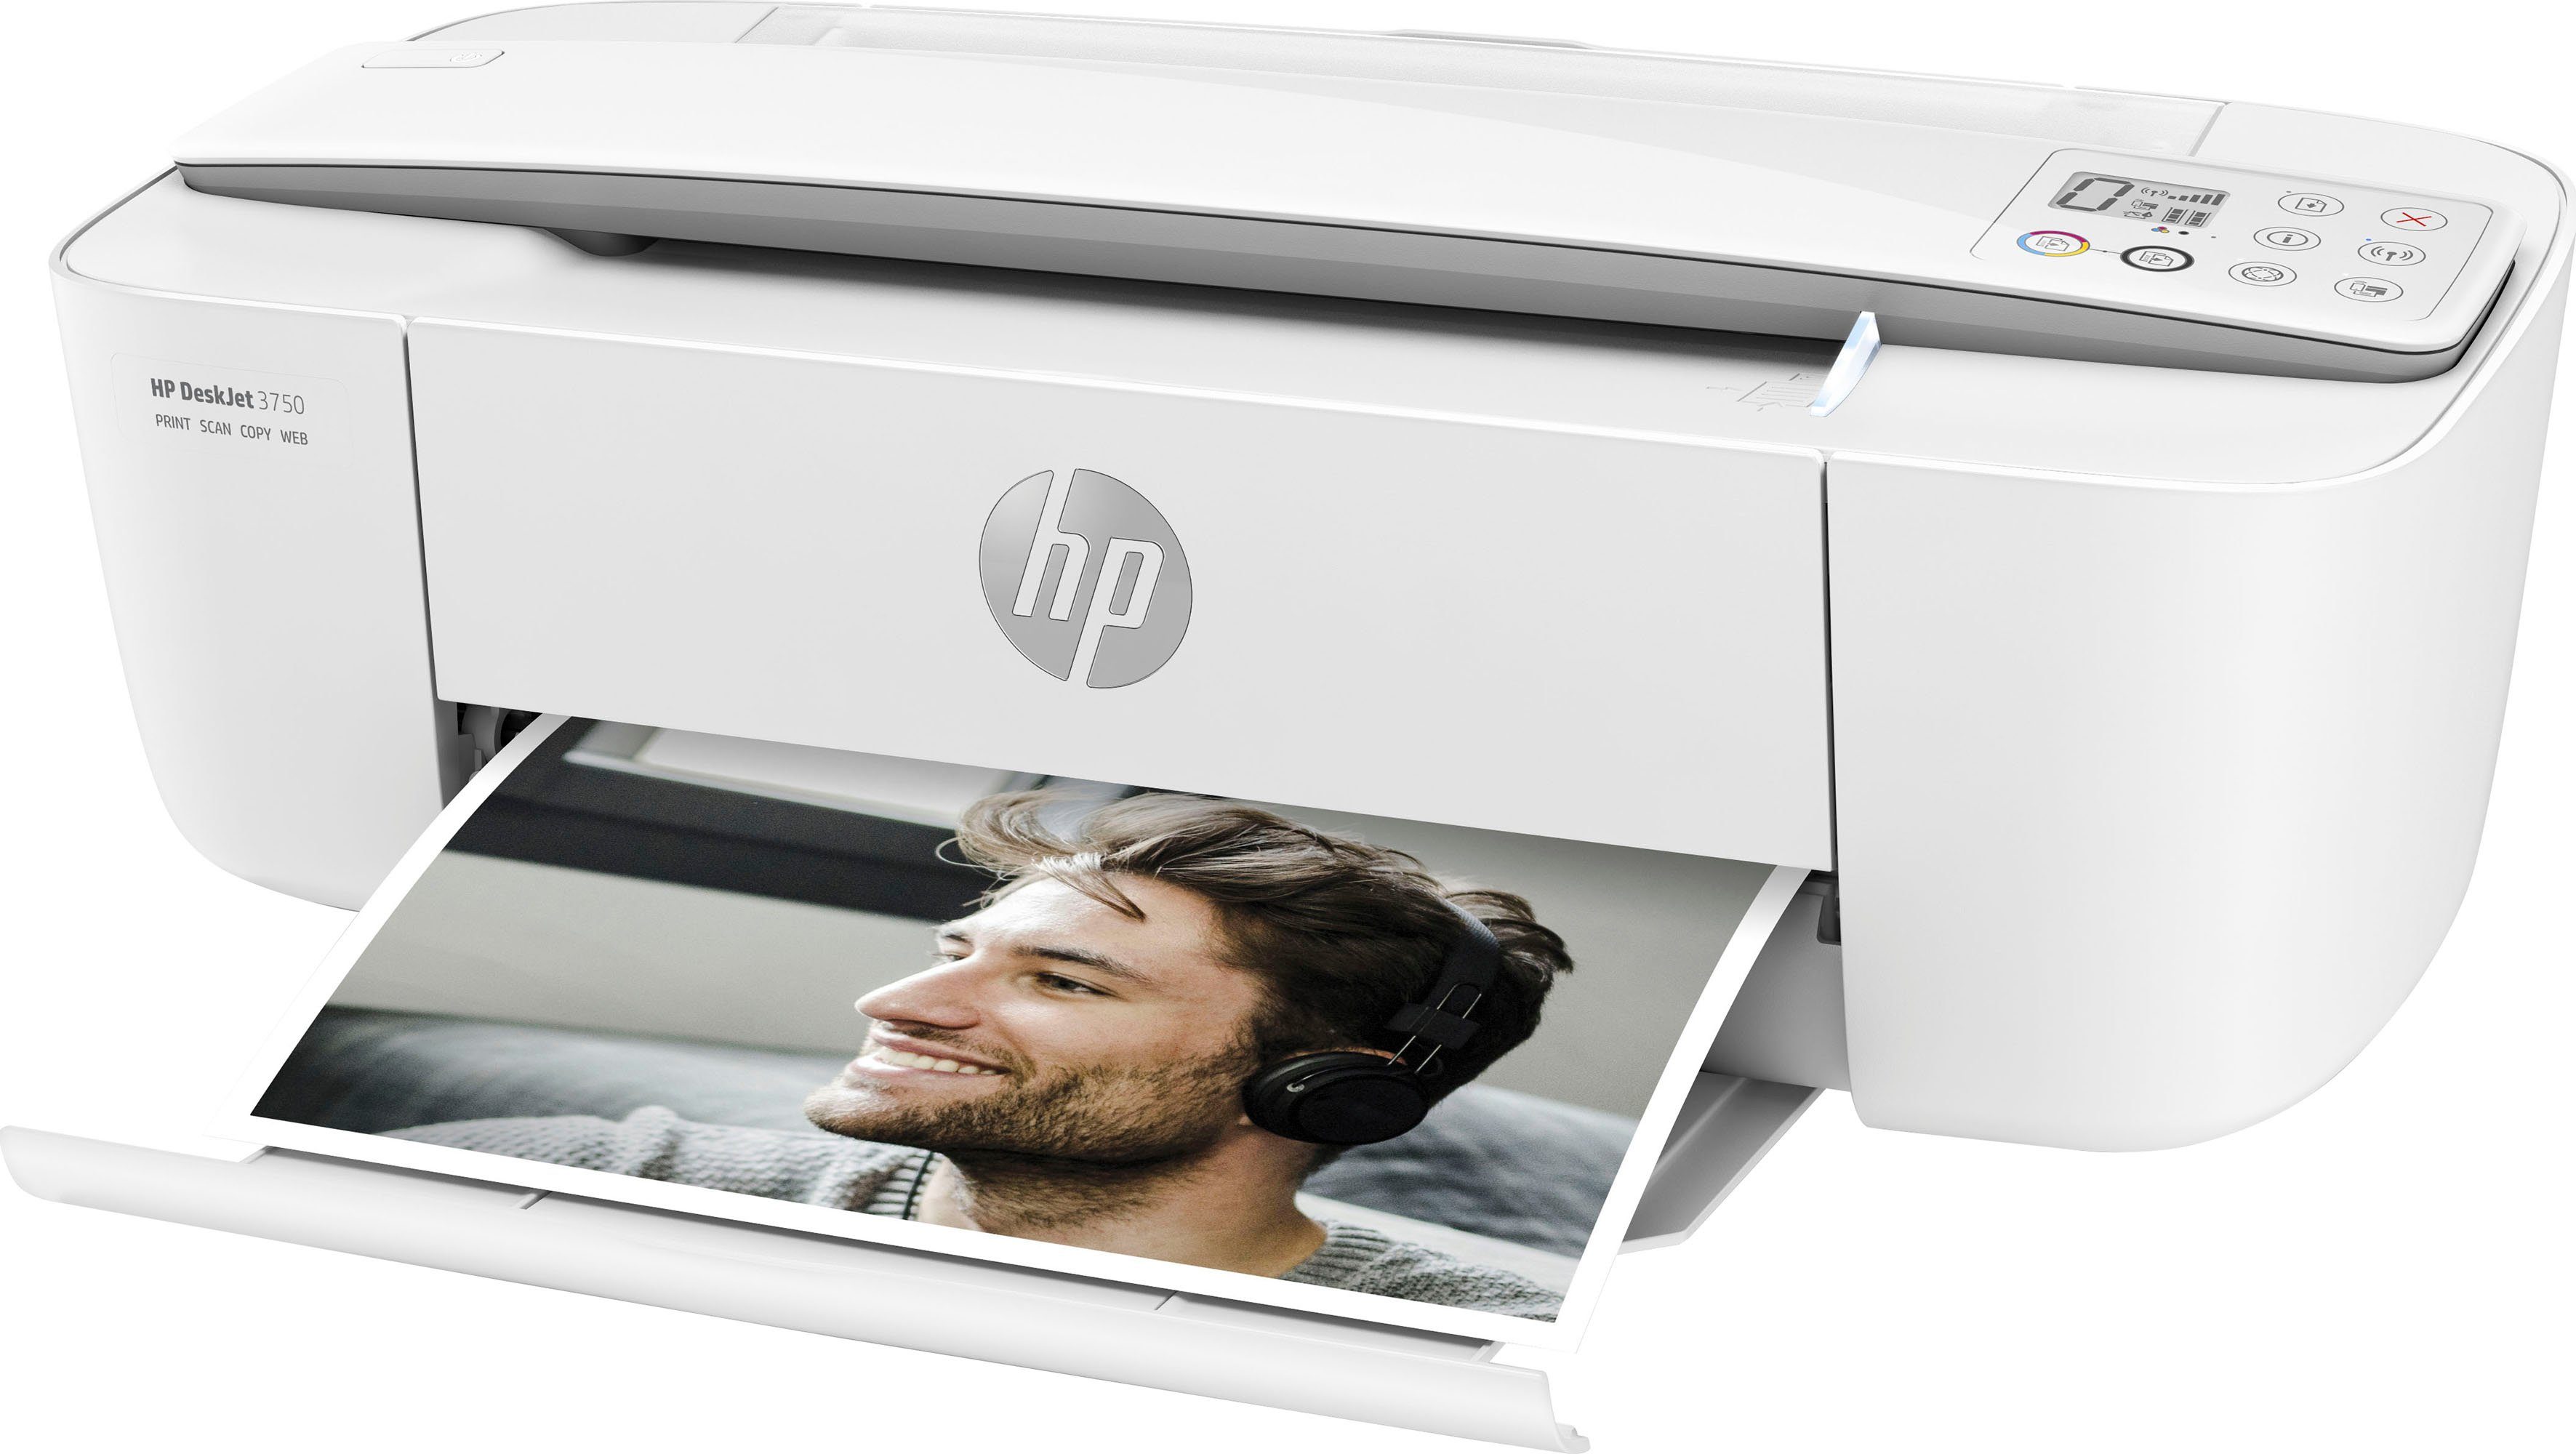 HP kompatibel) (WLAN Multifunktionsdrucker, Drucker (Wi-Fi), DeskJet Ink Instant HP+ 3750